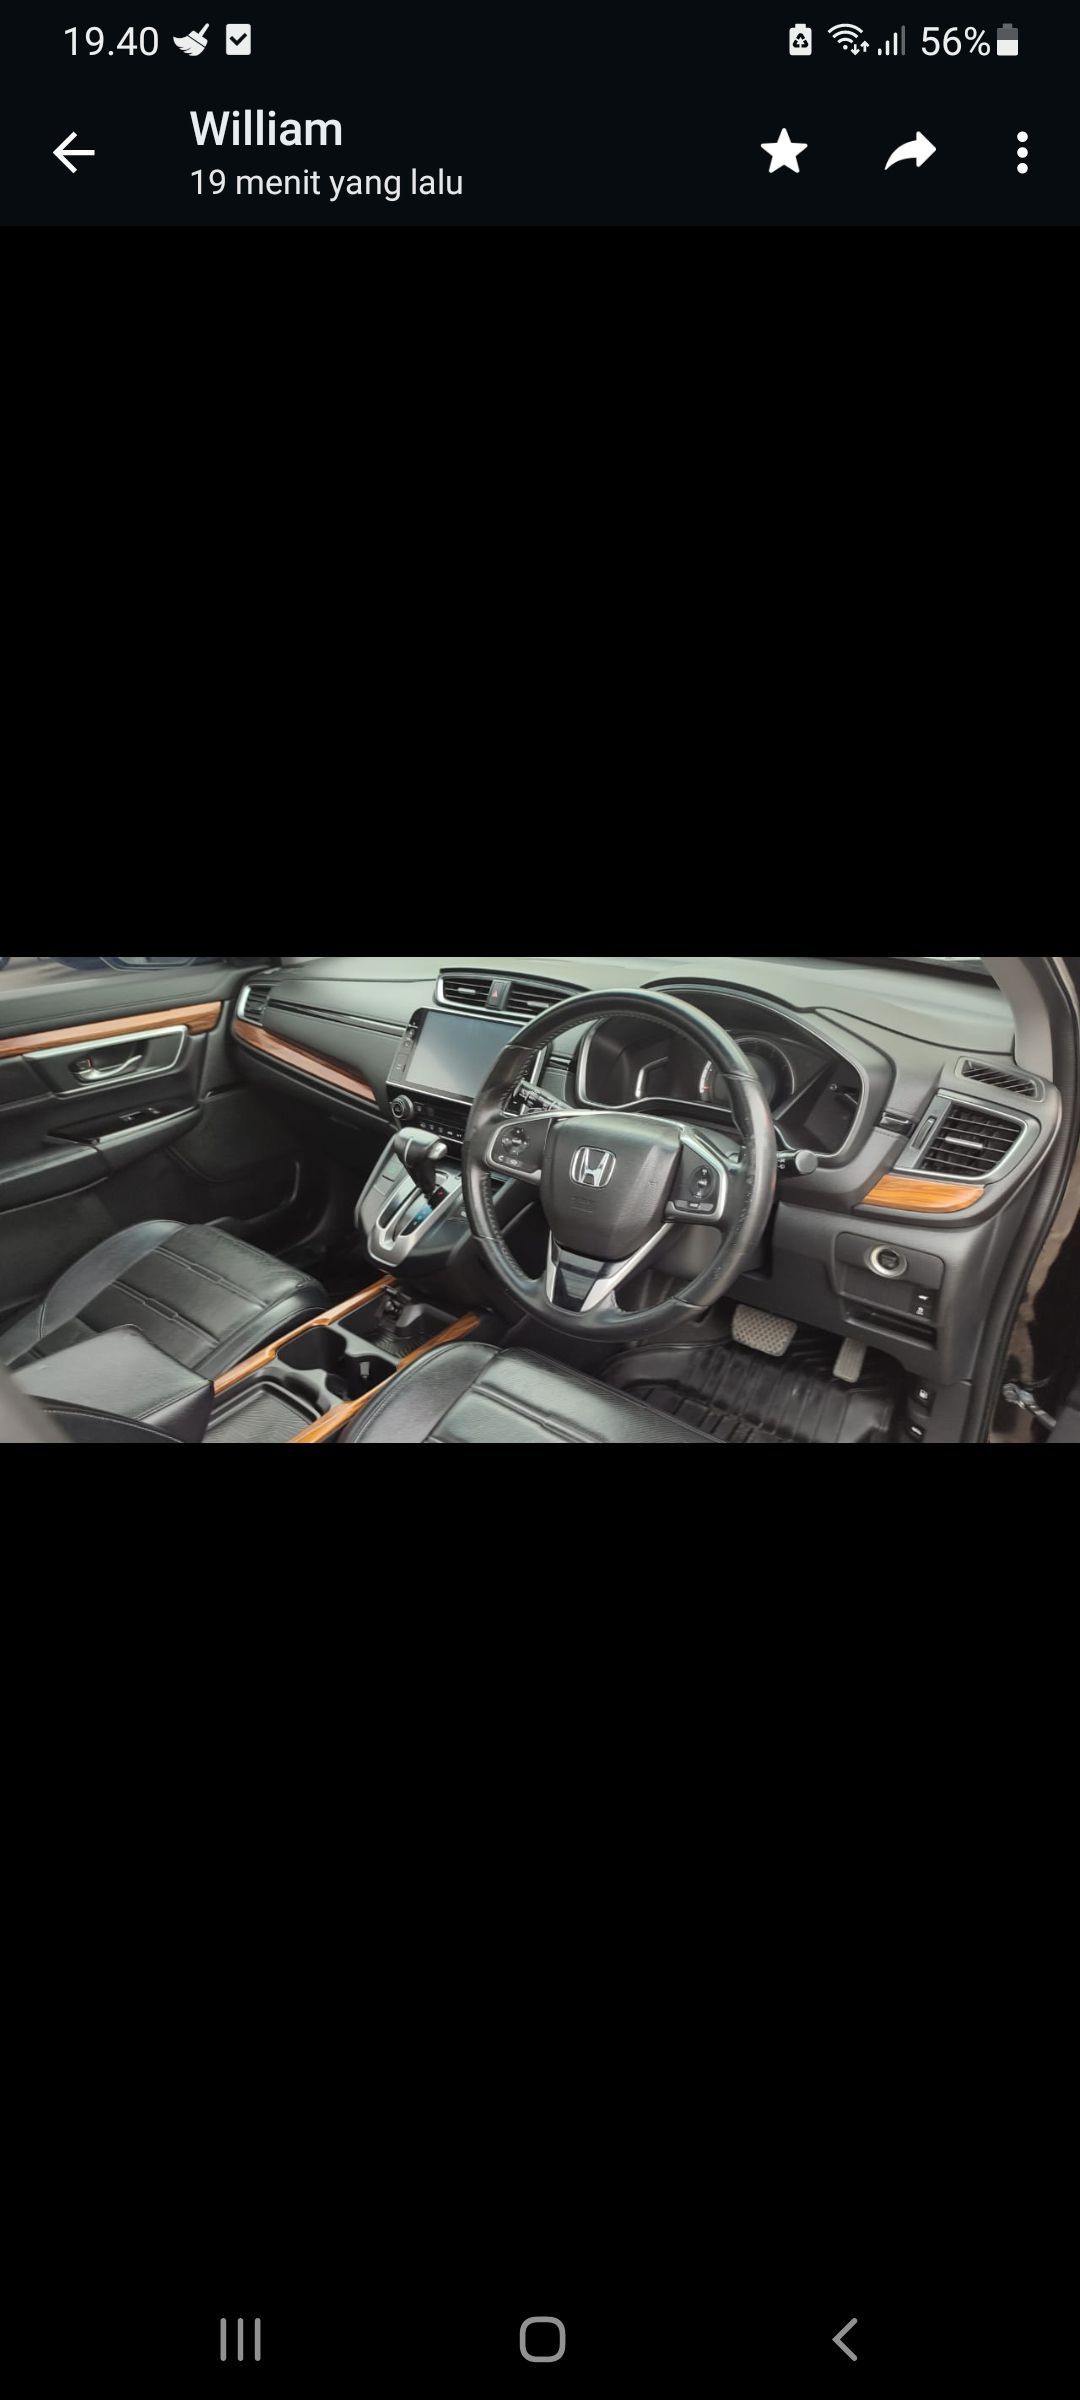 2017 Honda CRV 1.5L Turbo Prestige 1.5L Turbo Prestige tua